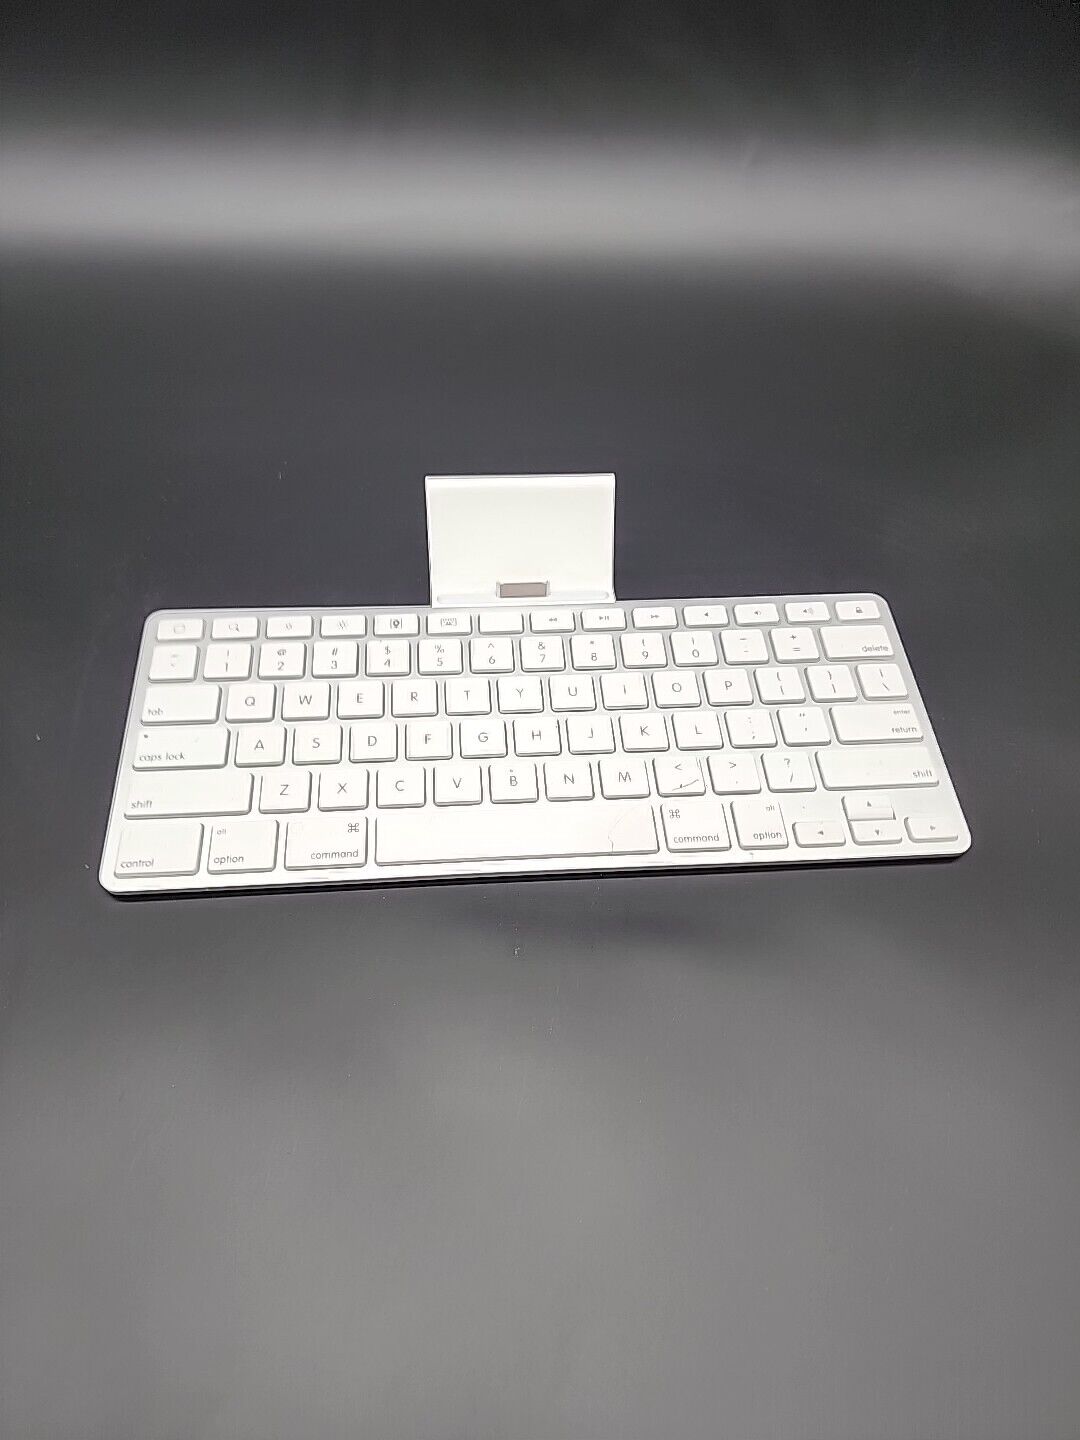 Apple MC533B/A Keyboard Dock iPad Dock